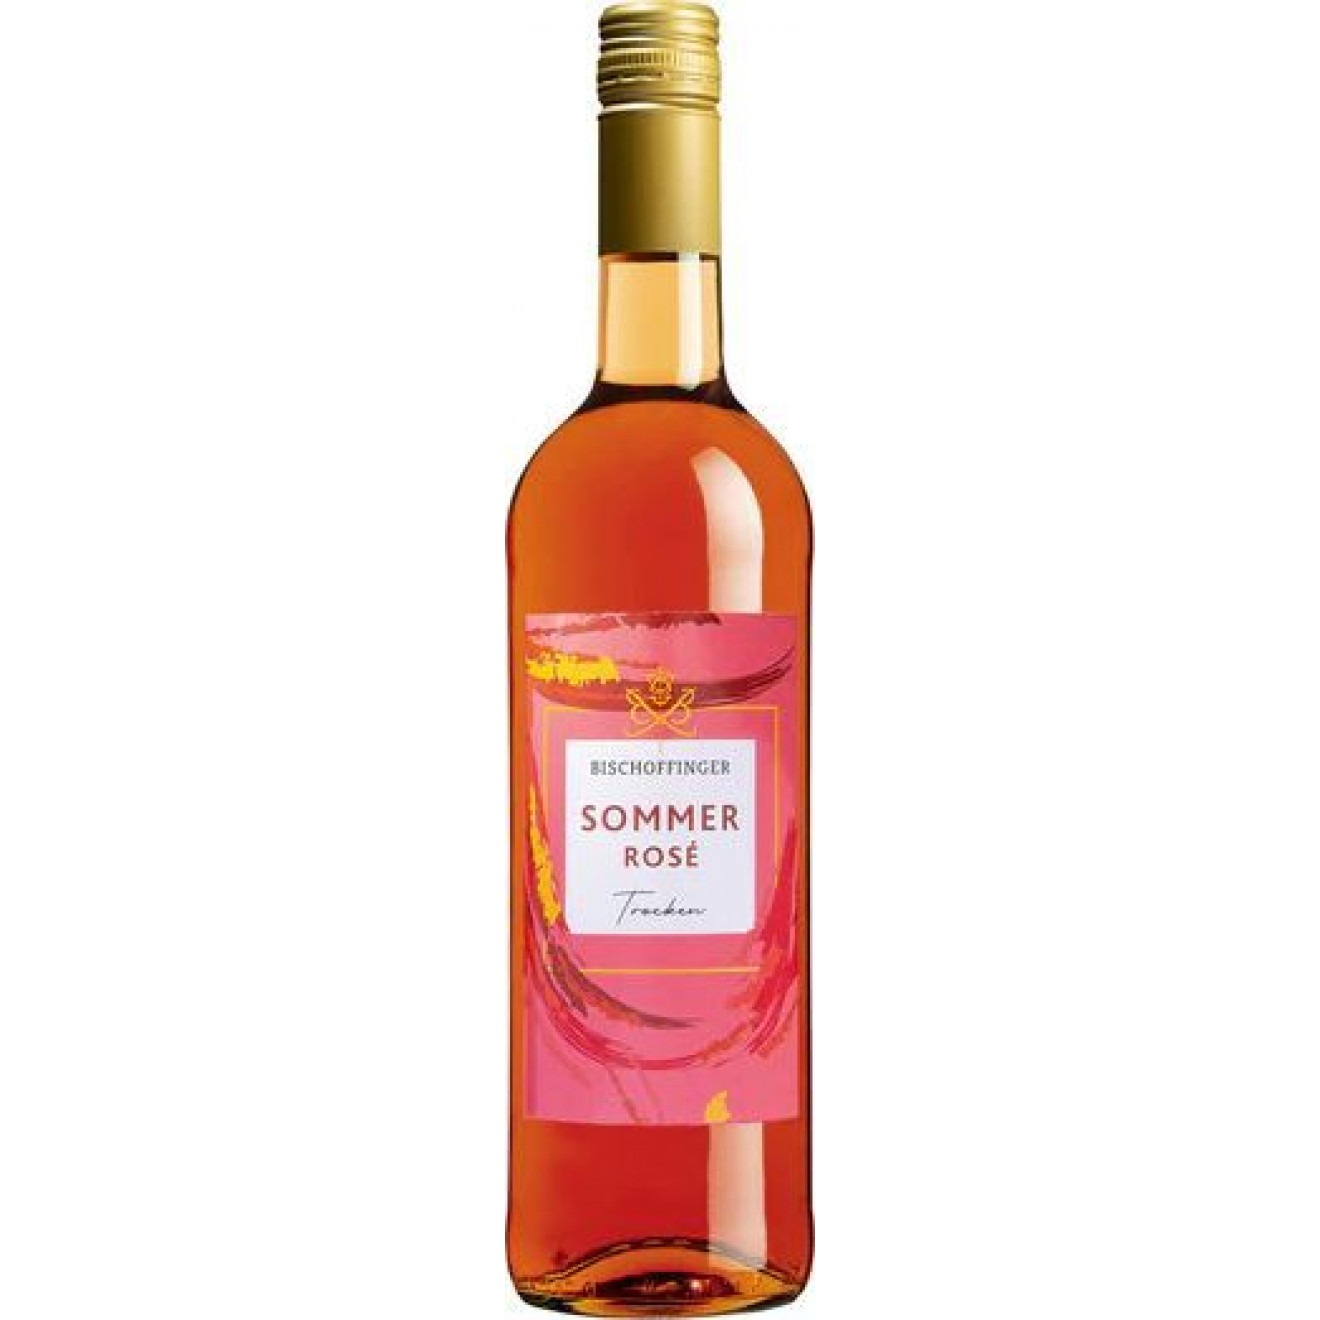 Bischoffinger Sommercuvée rose trocken 2021 0,75l